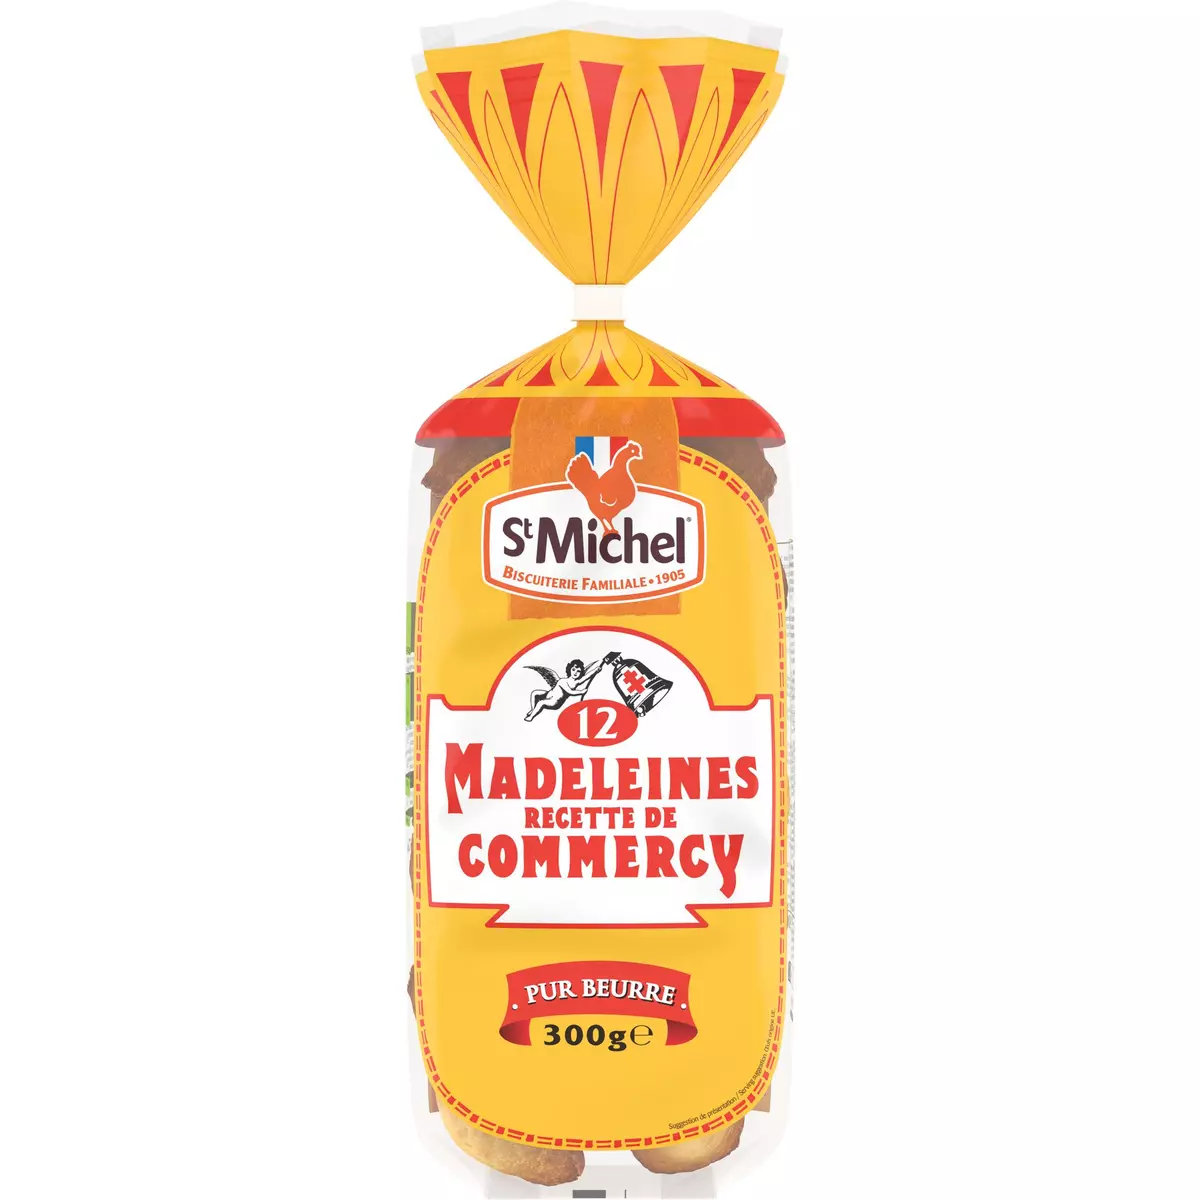 ST MICHEL Madeleines recette de Commercy pur beurre 12 madeleines 300g